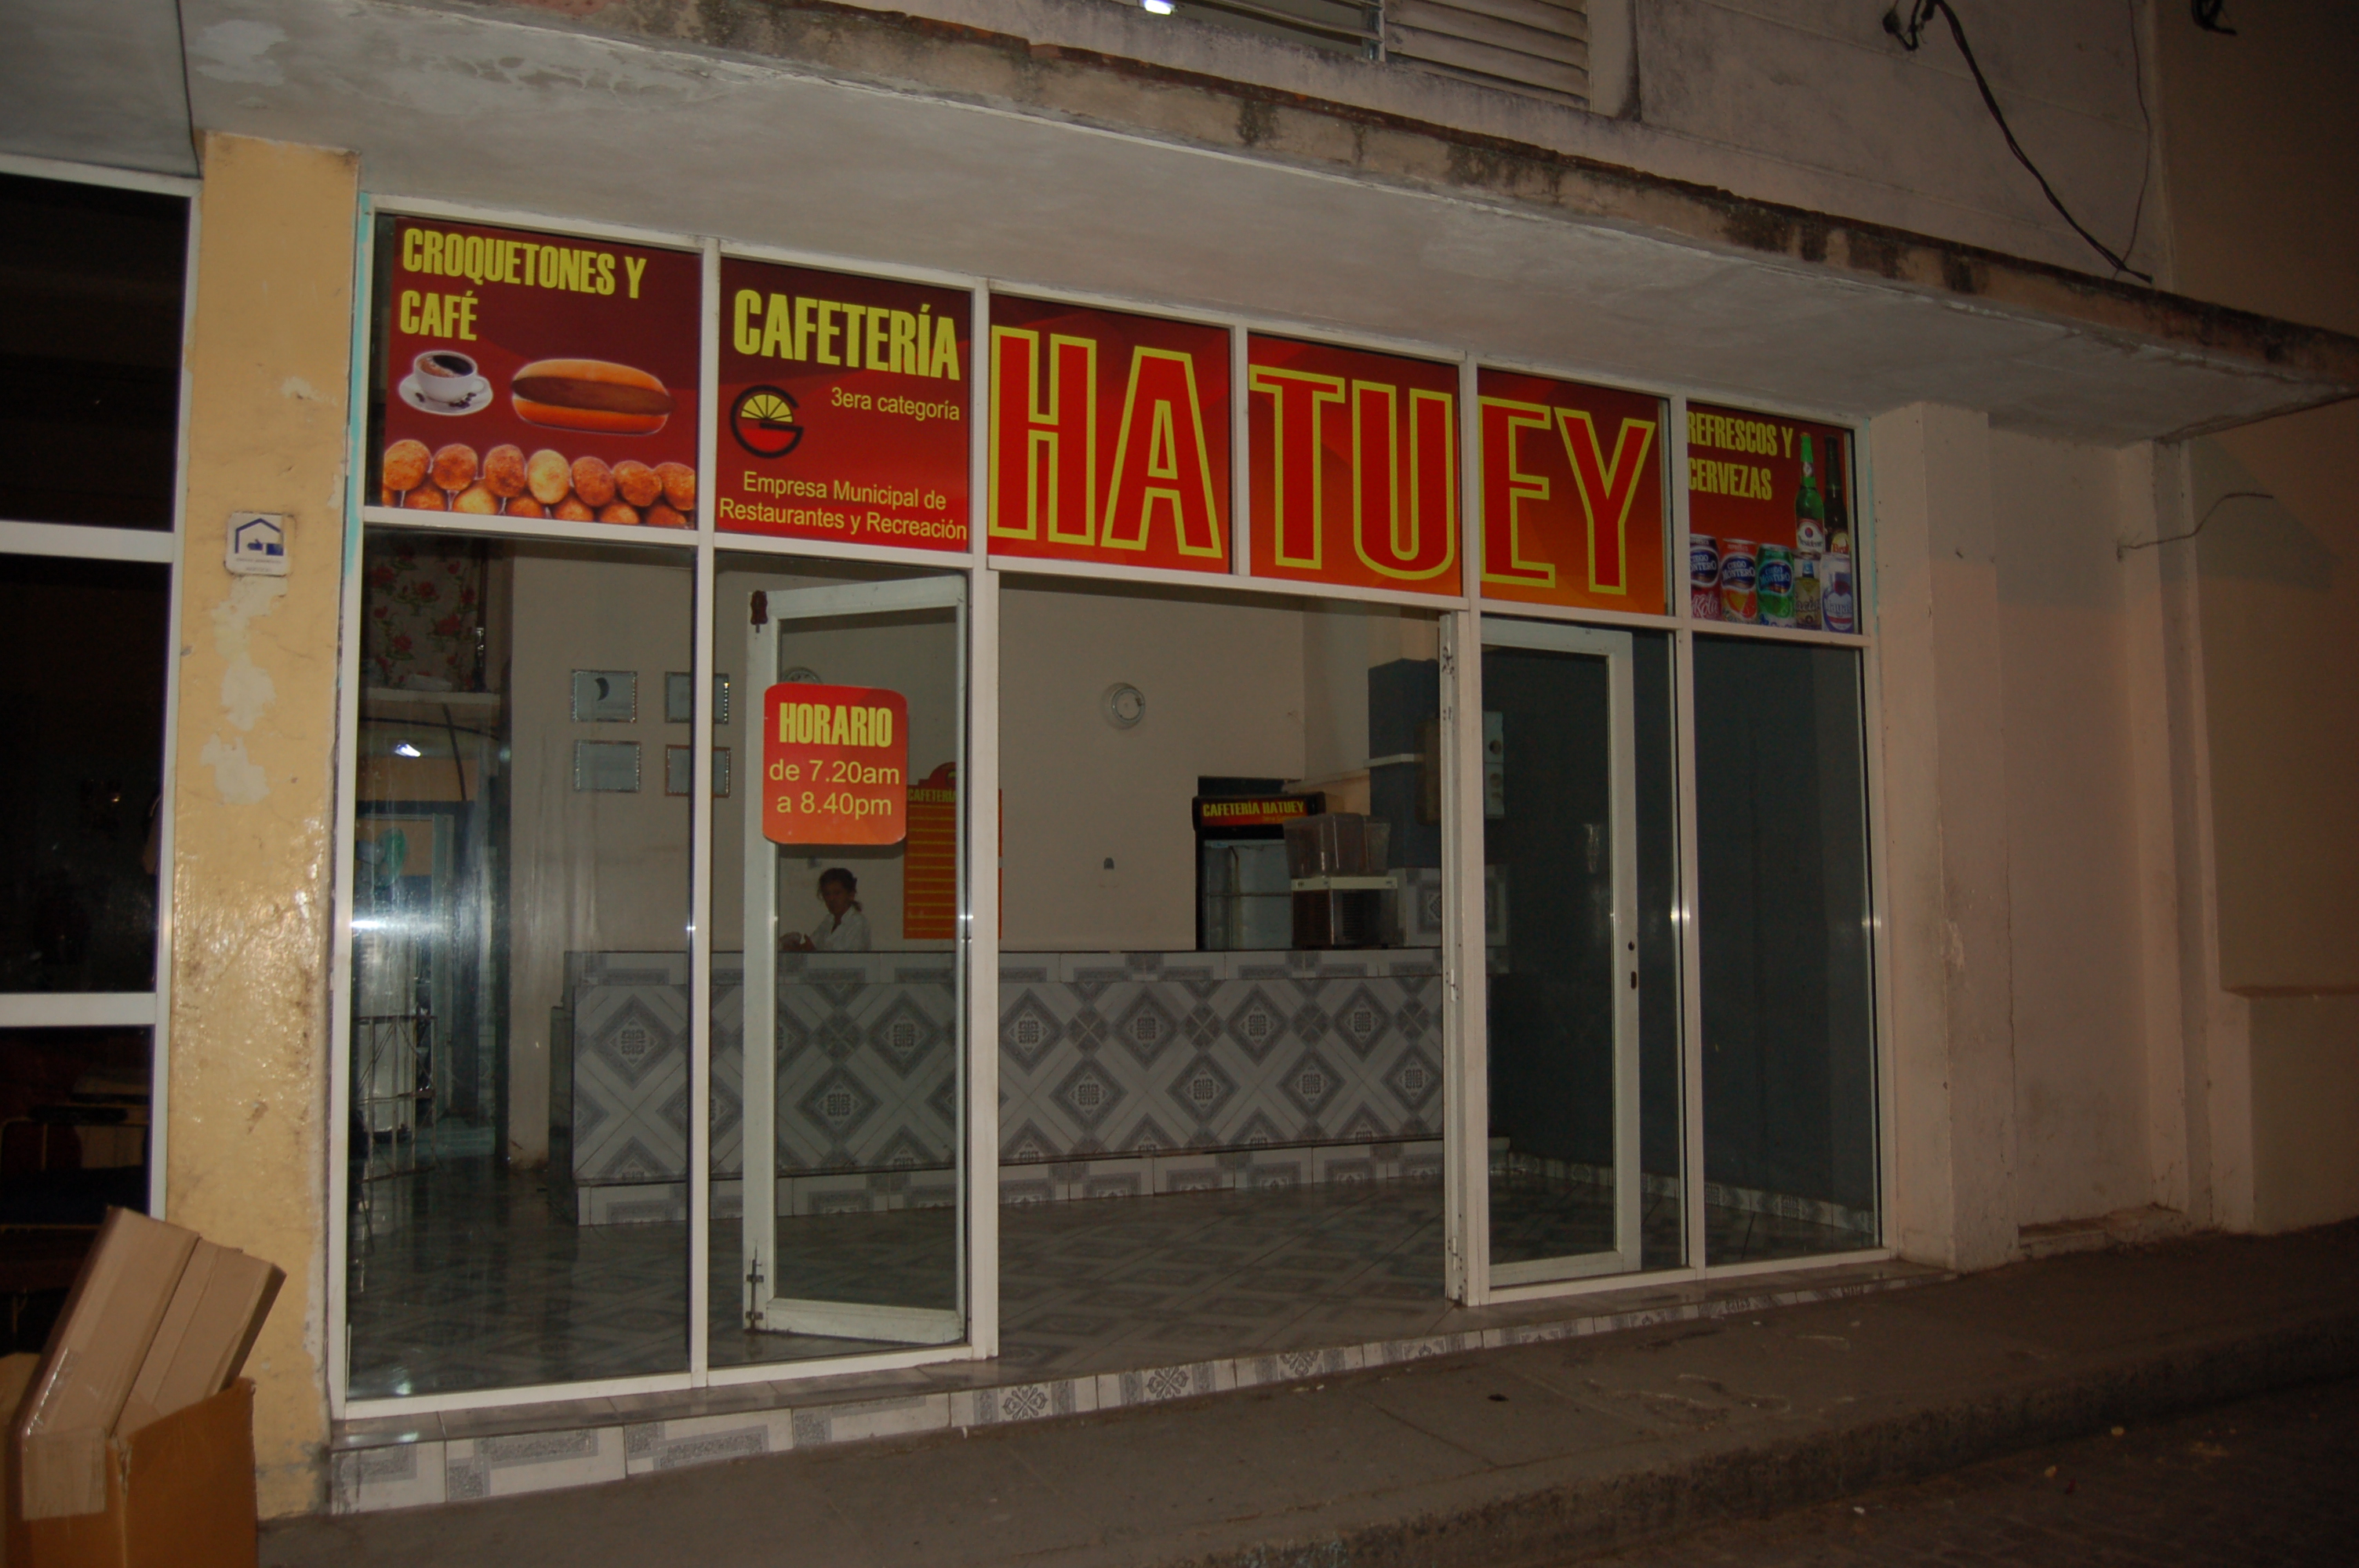 Cafetetra Hatuey2